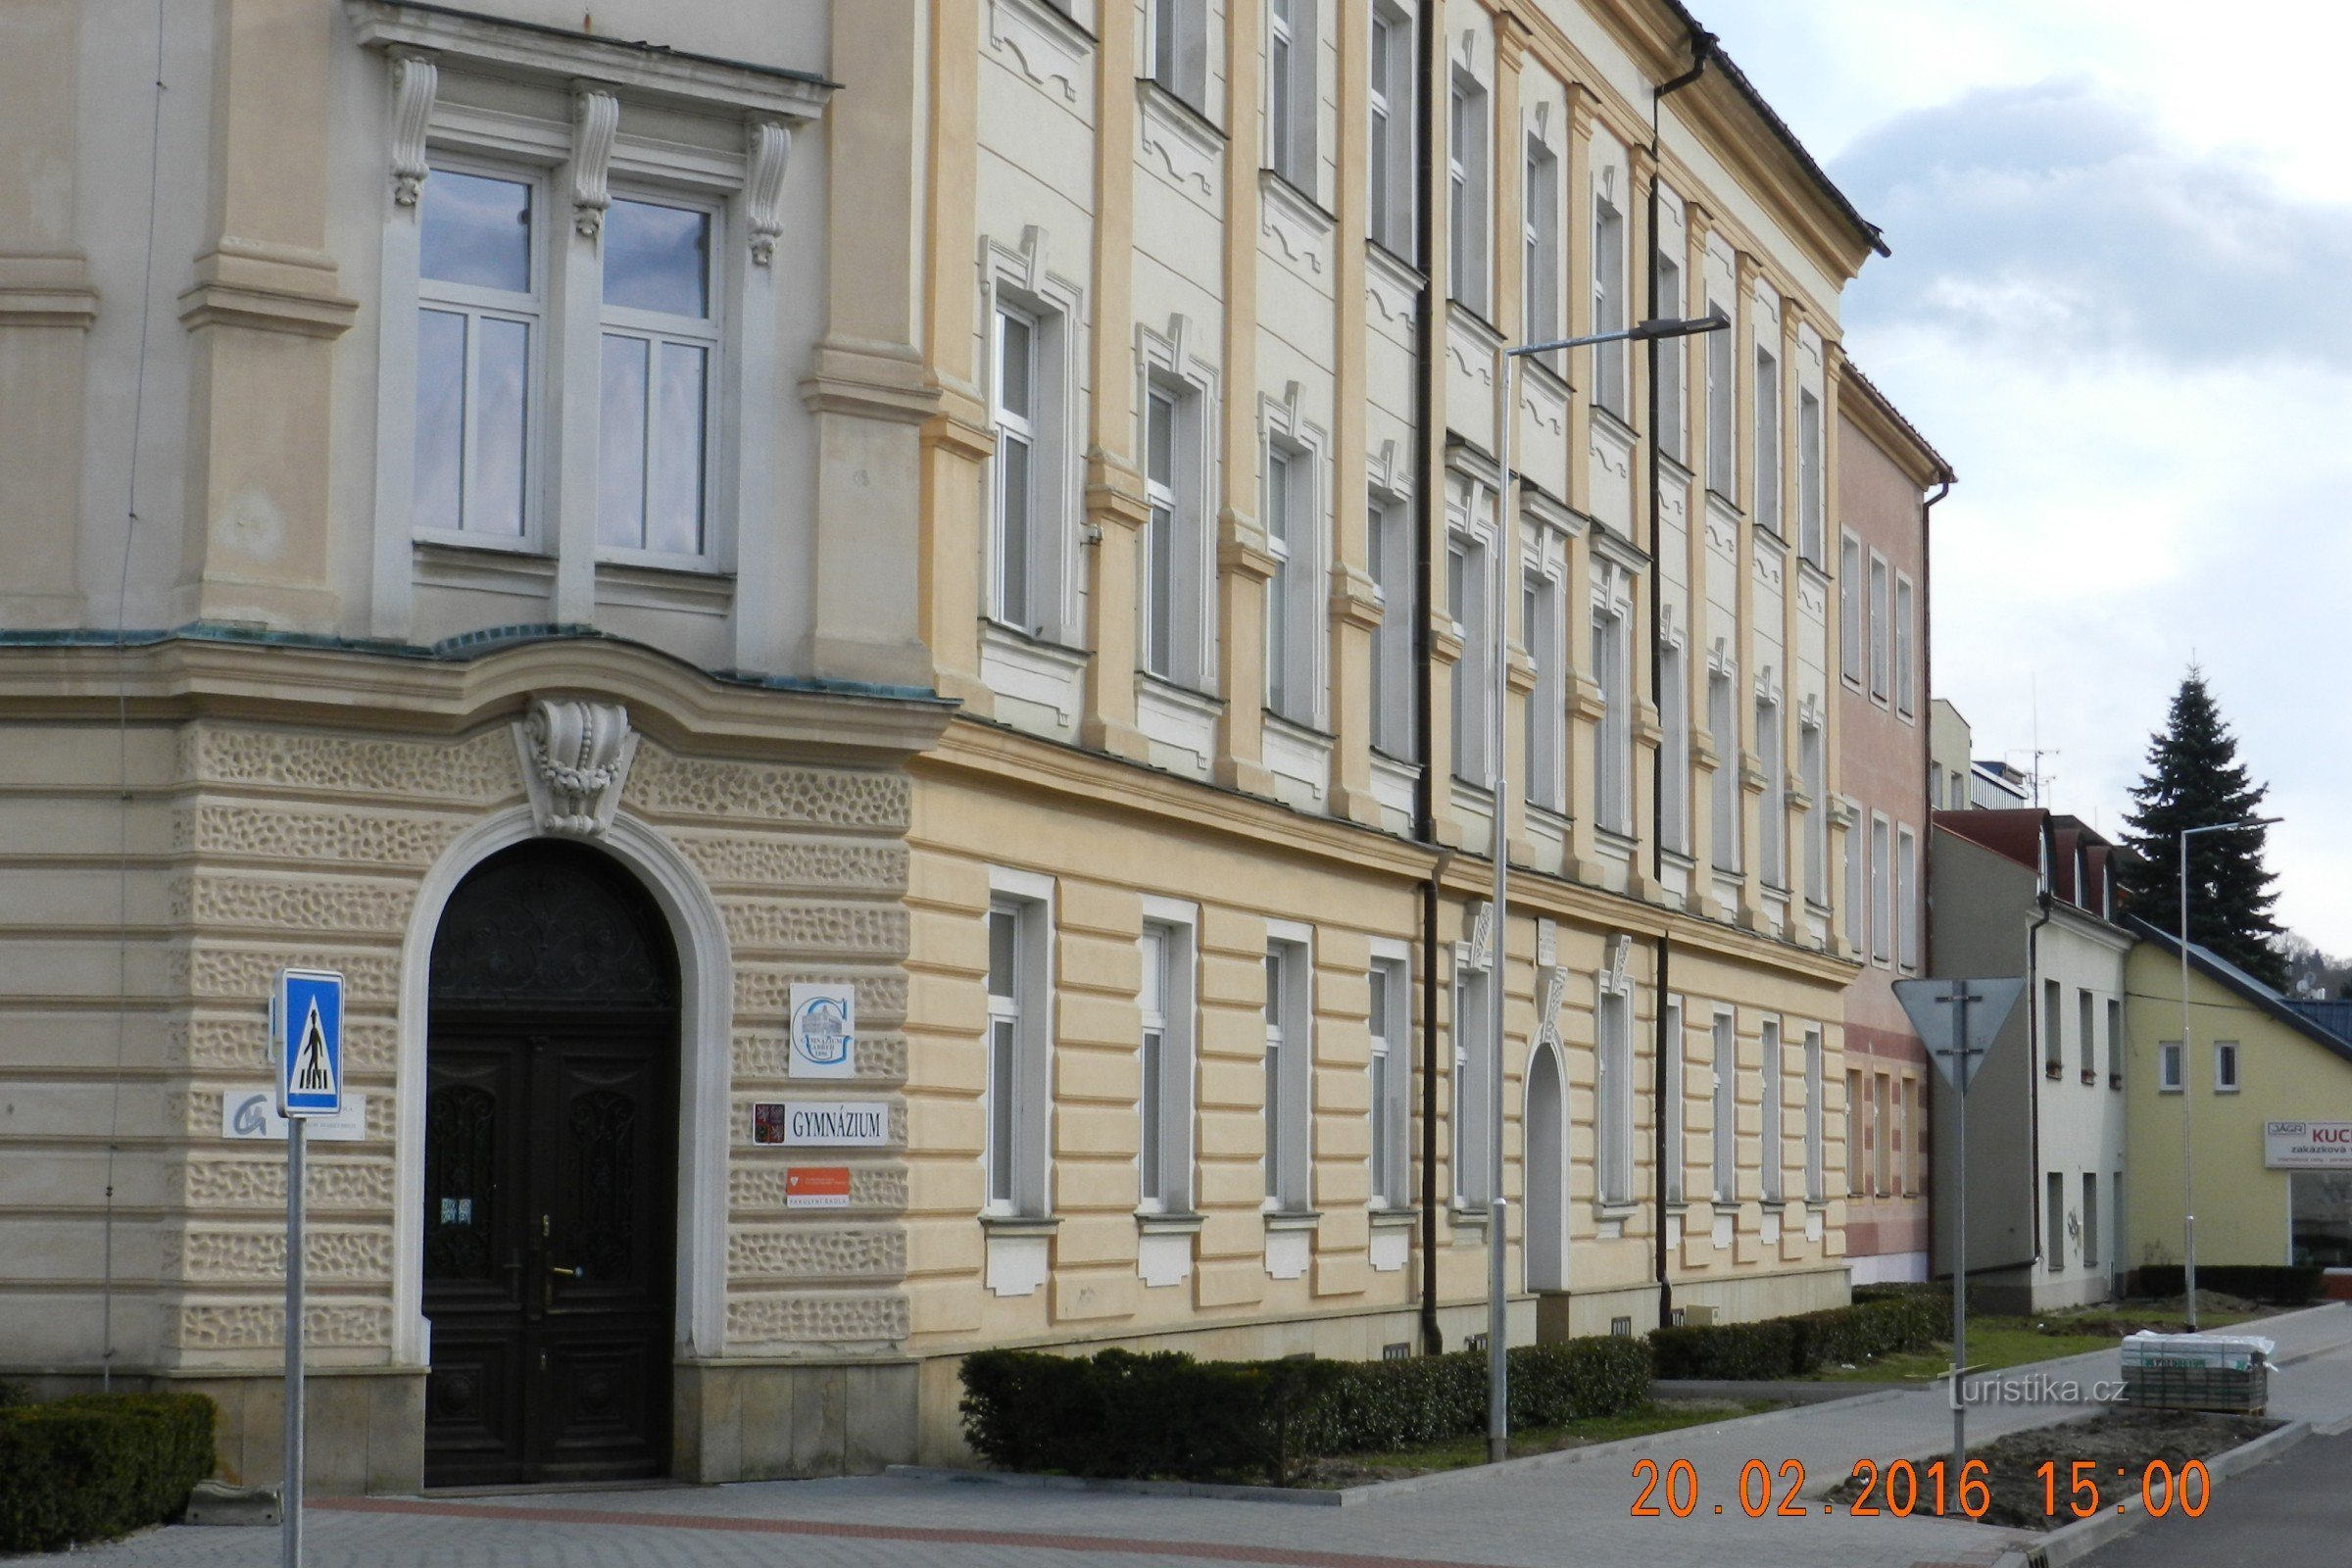 Zábřeh - будівля гімназії - перша і найстаріша середня школа в Північно-Західній Моравії